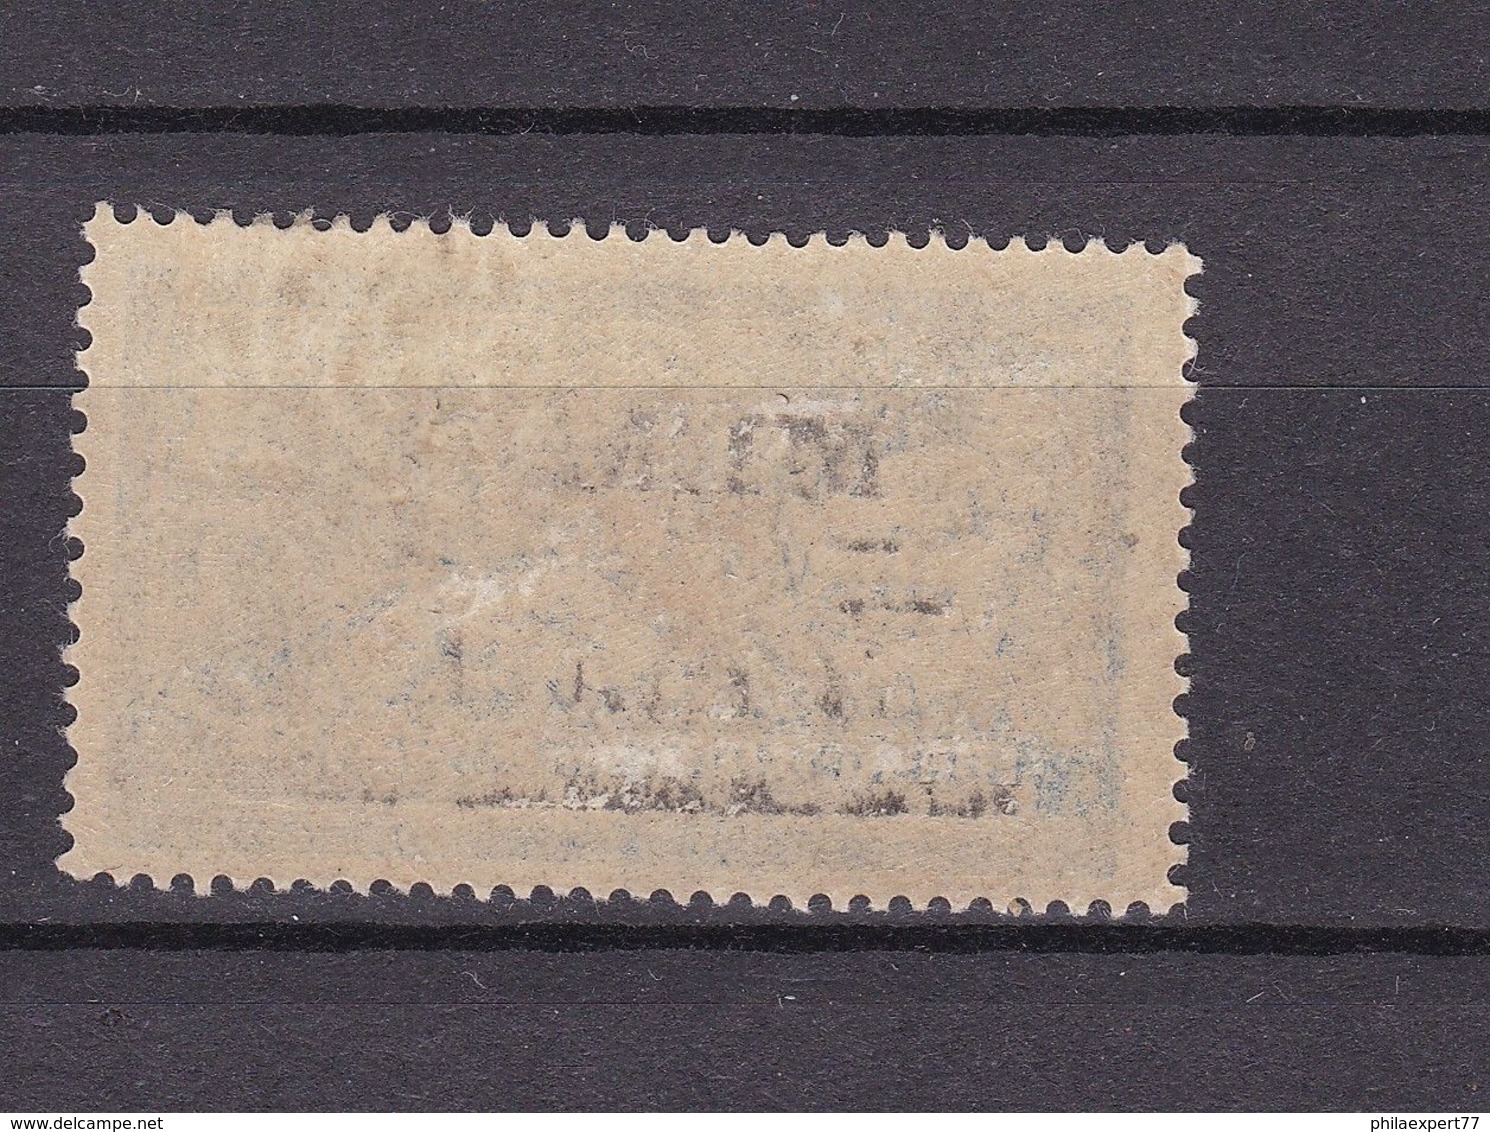 Memelgebiet - 1920/22 - Michel Nr. 30 - Ungebr. M. Falz - 40 Euro - Klaipeda 1923